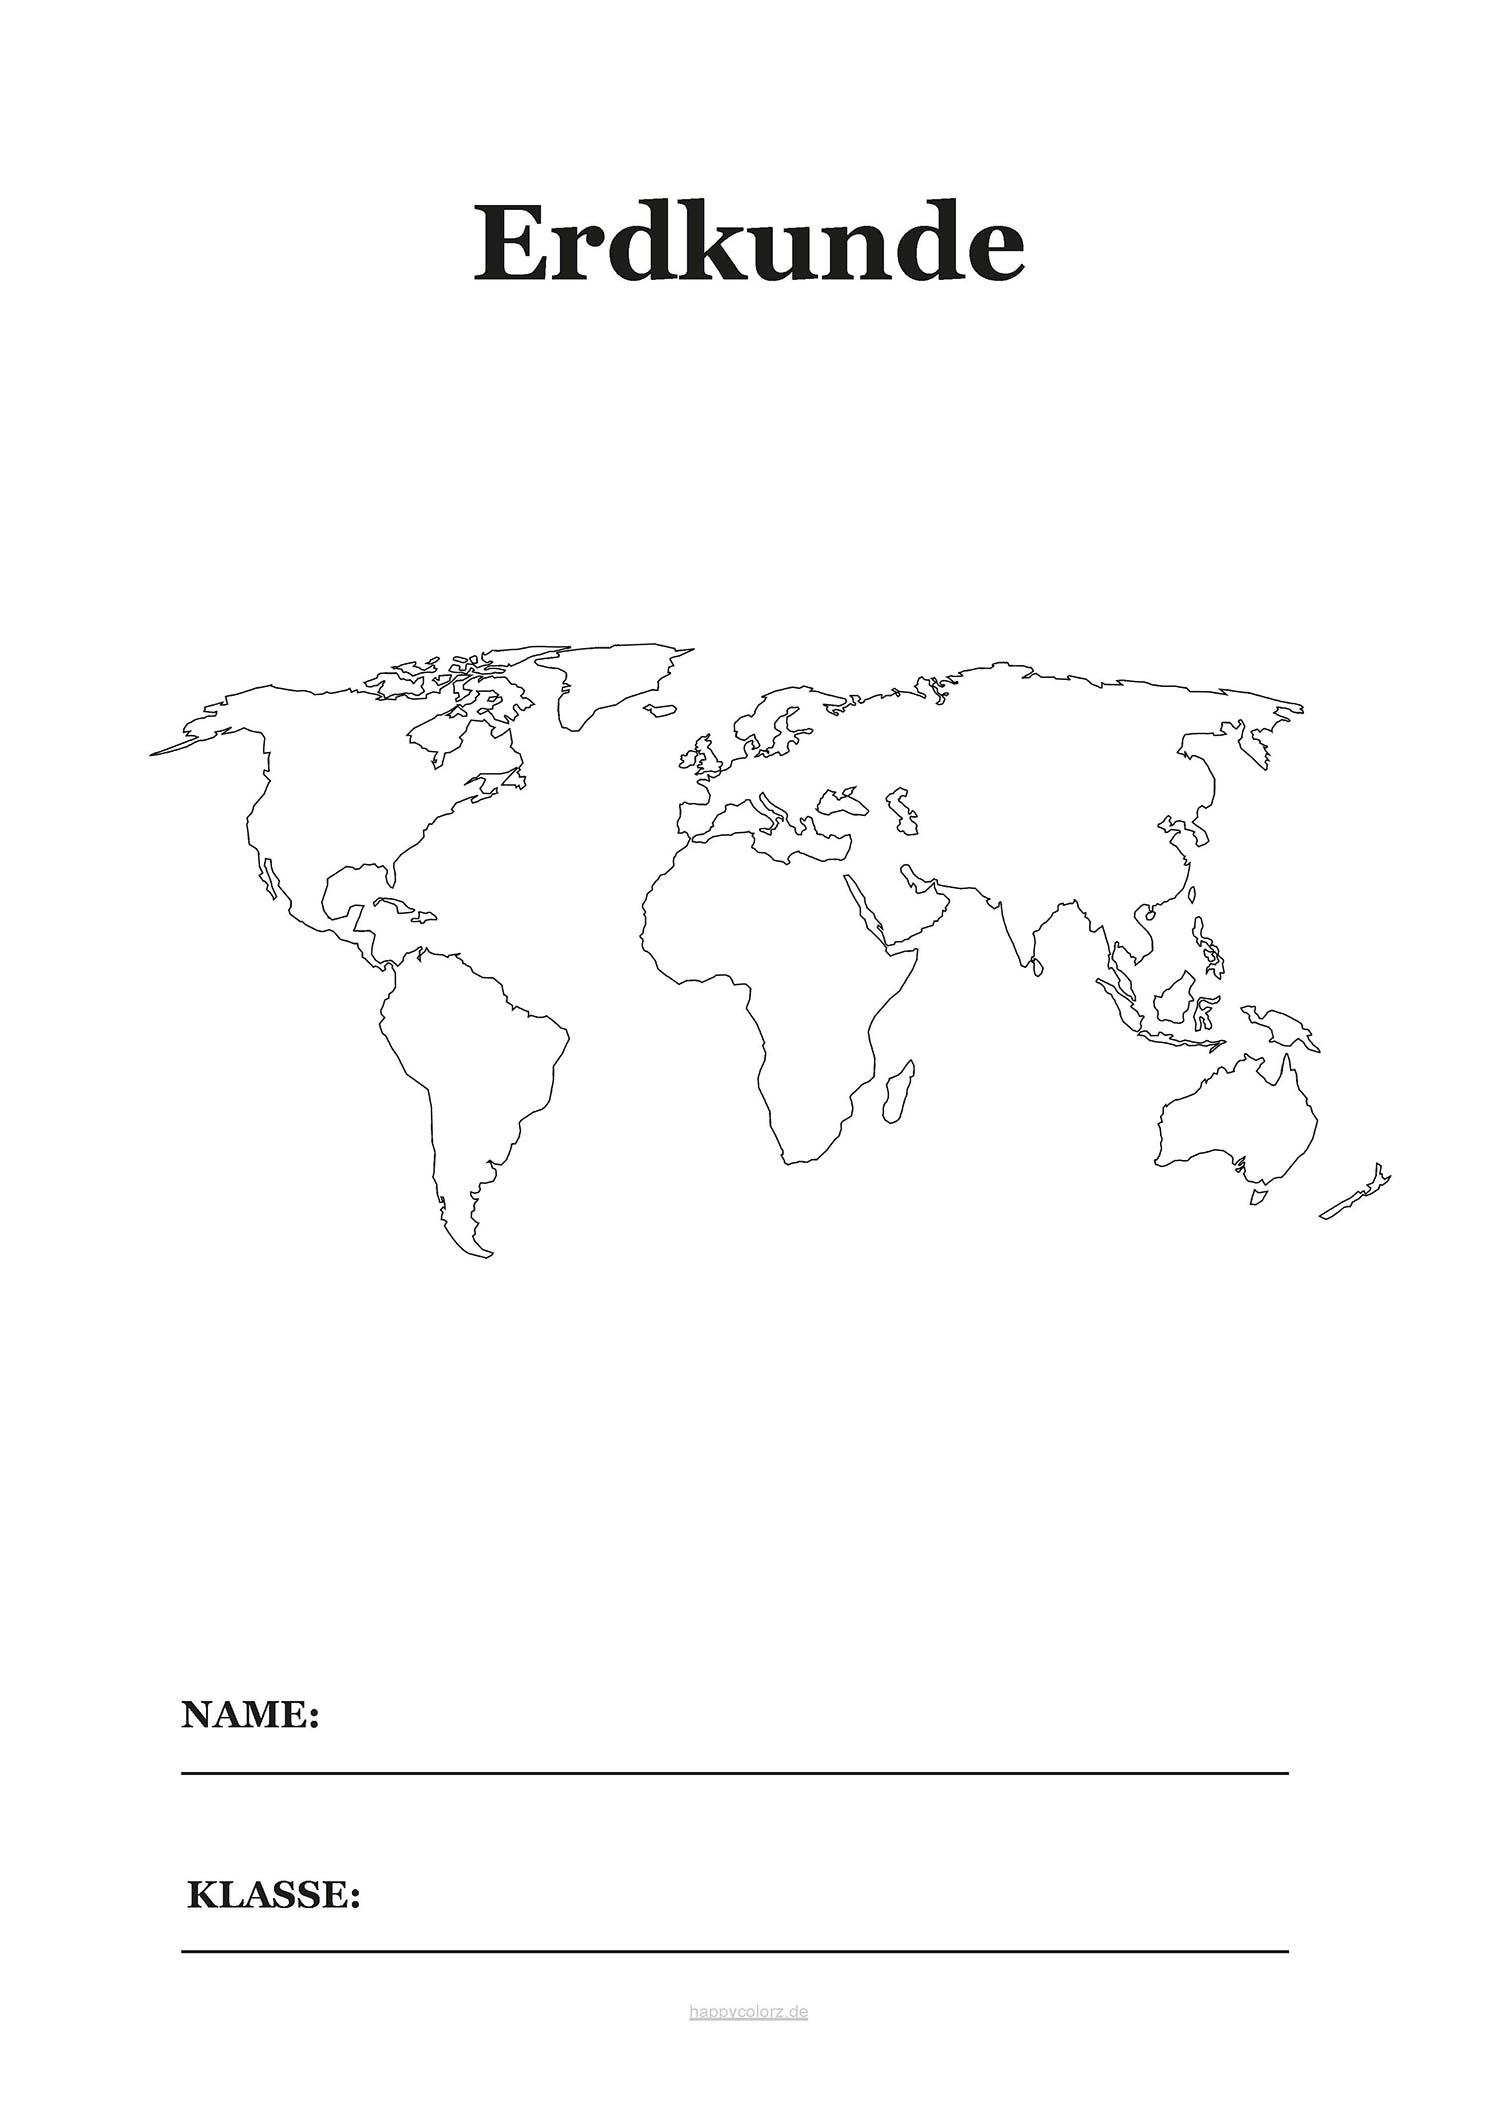 Erdkunde Deckblatt mit Karte zum kostenlosen ausdrucken (pdf)